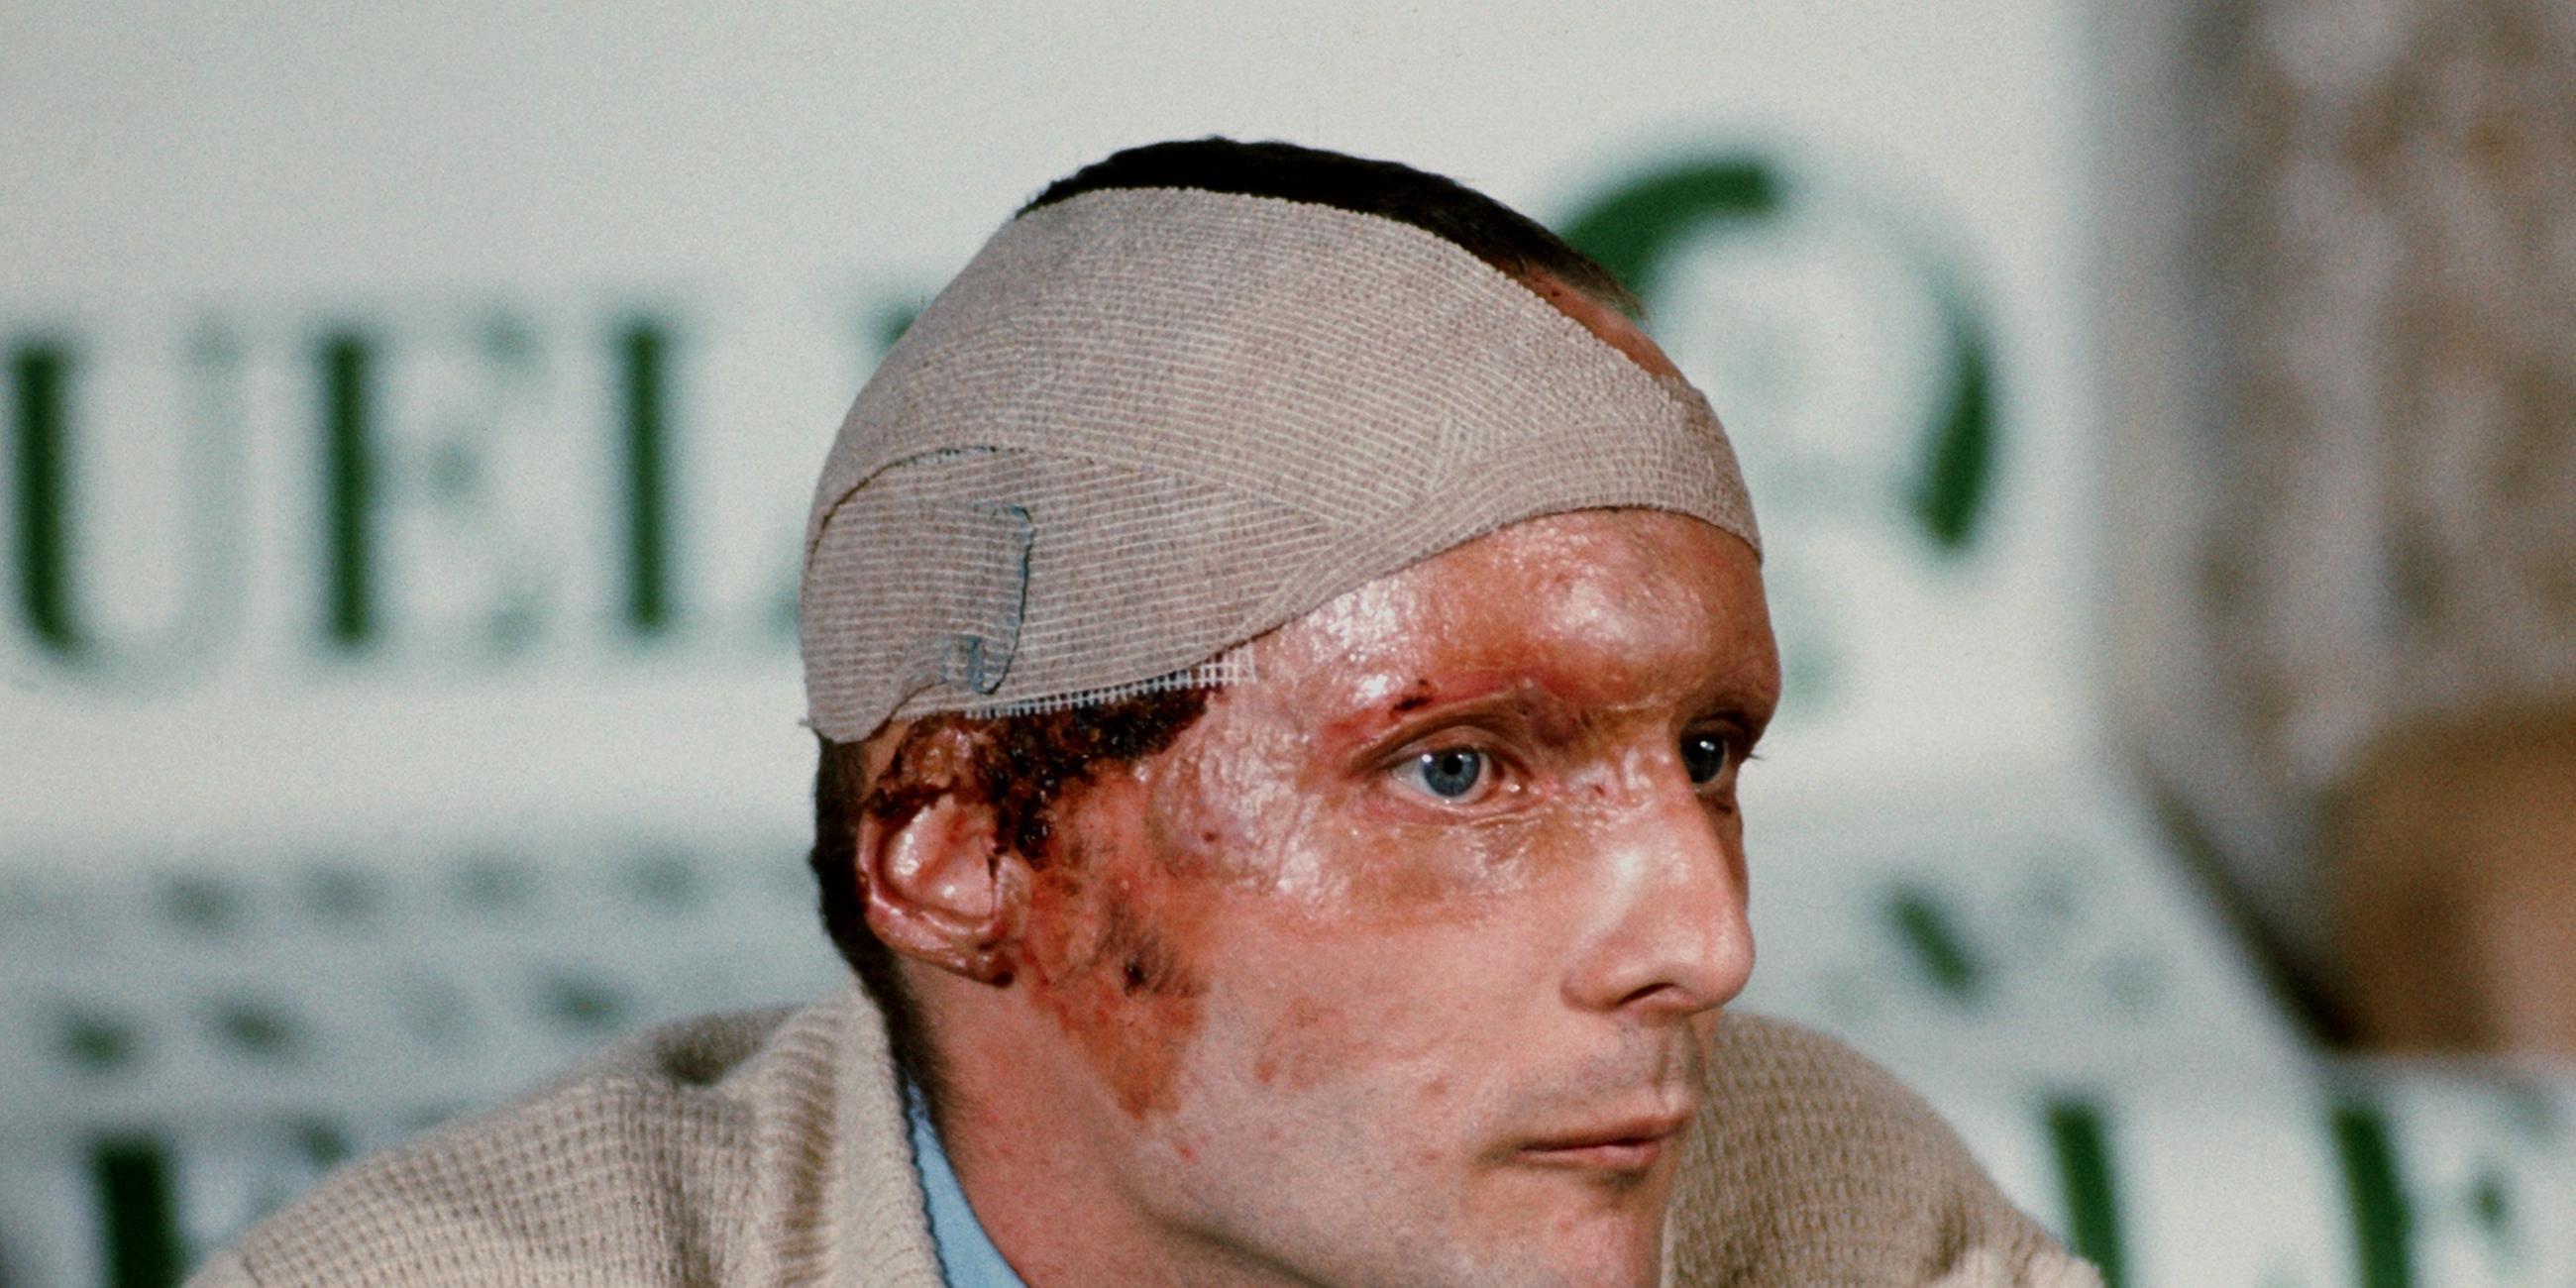 Niki Lauda bei Pressekonferenz nach Unfall